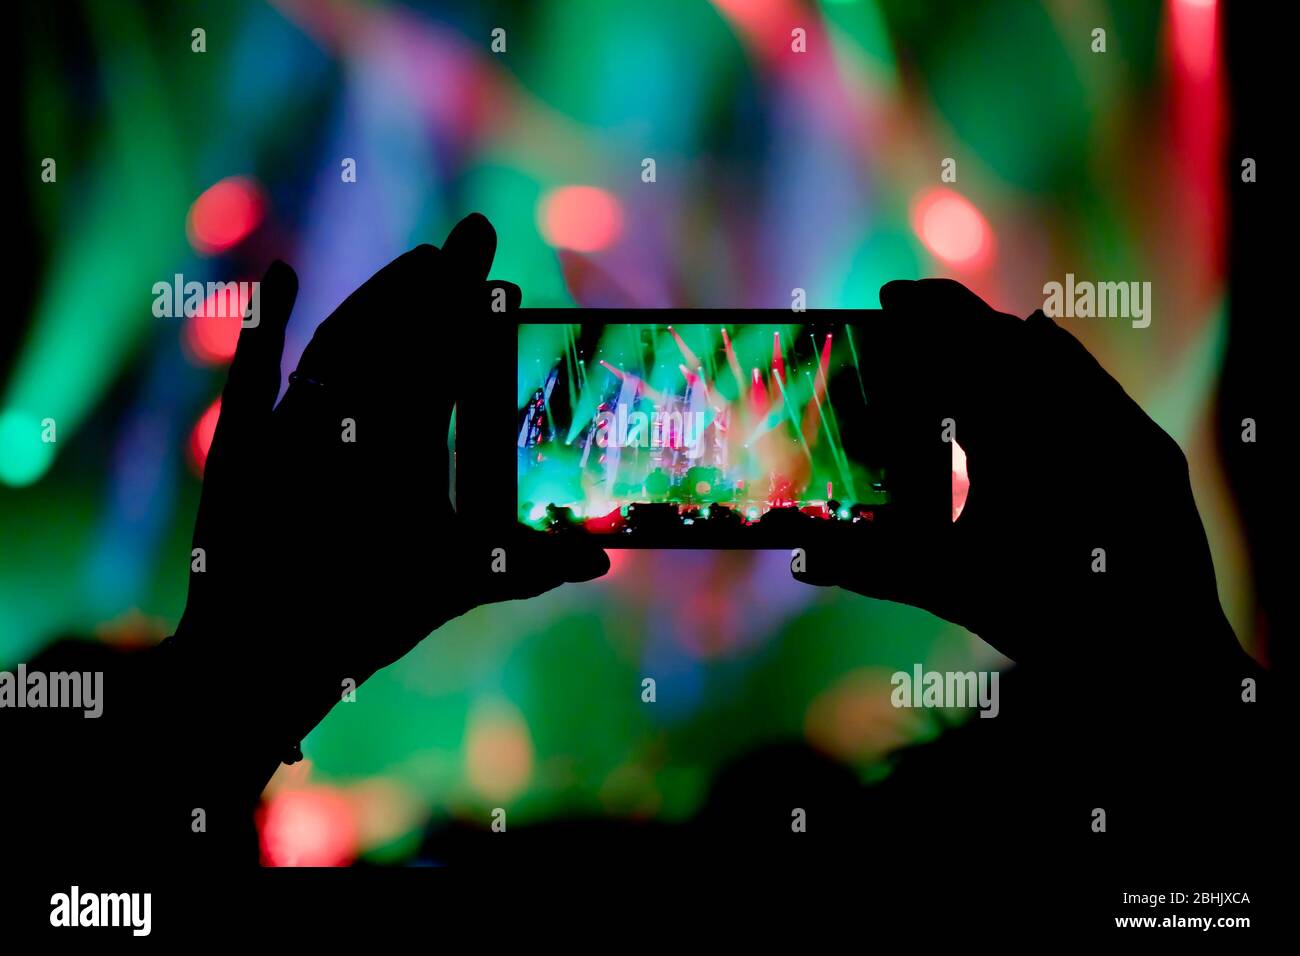 La collecte de mémoire numérique perd la capacité d'être présent, silhouette d'une personne prenant la main le concert des effets lumineux colorés scène avec s Banque D'Images